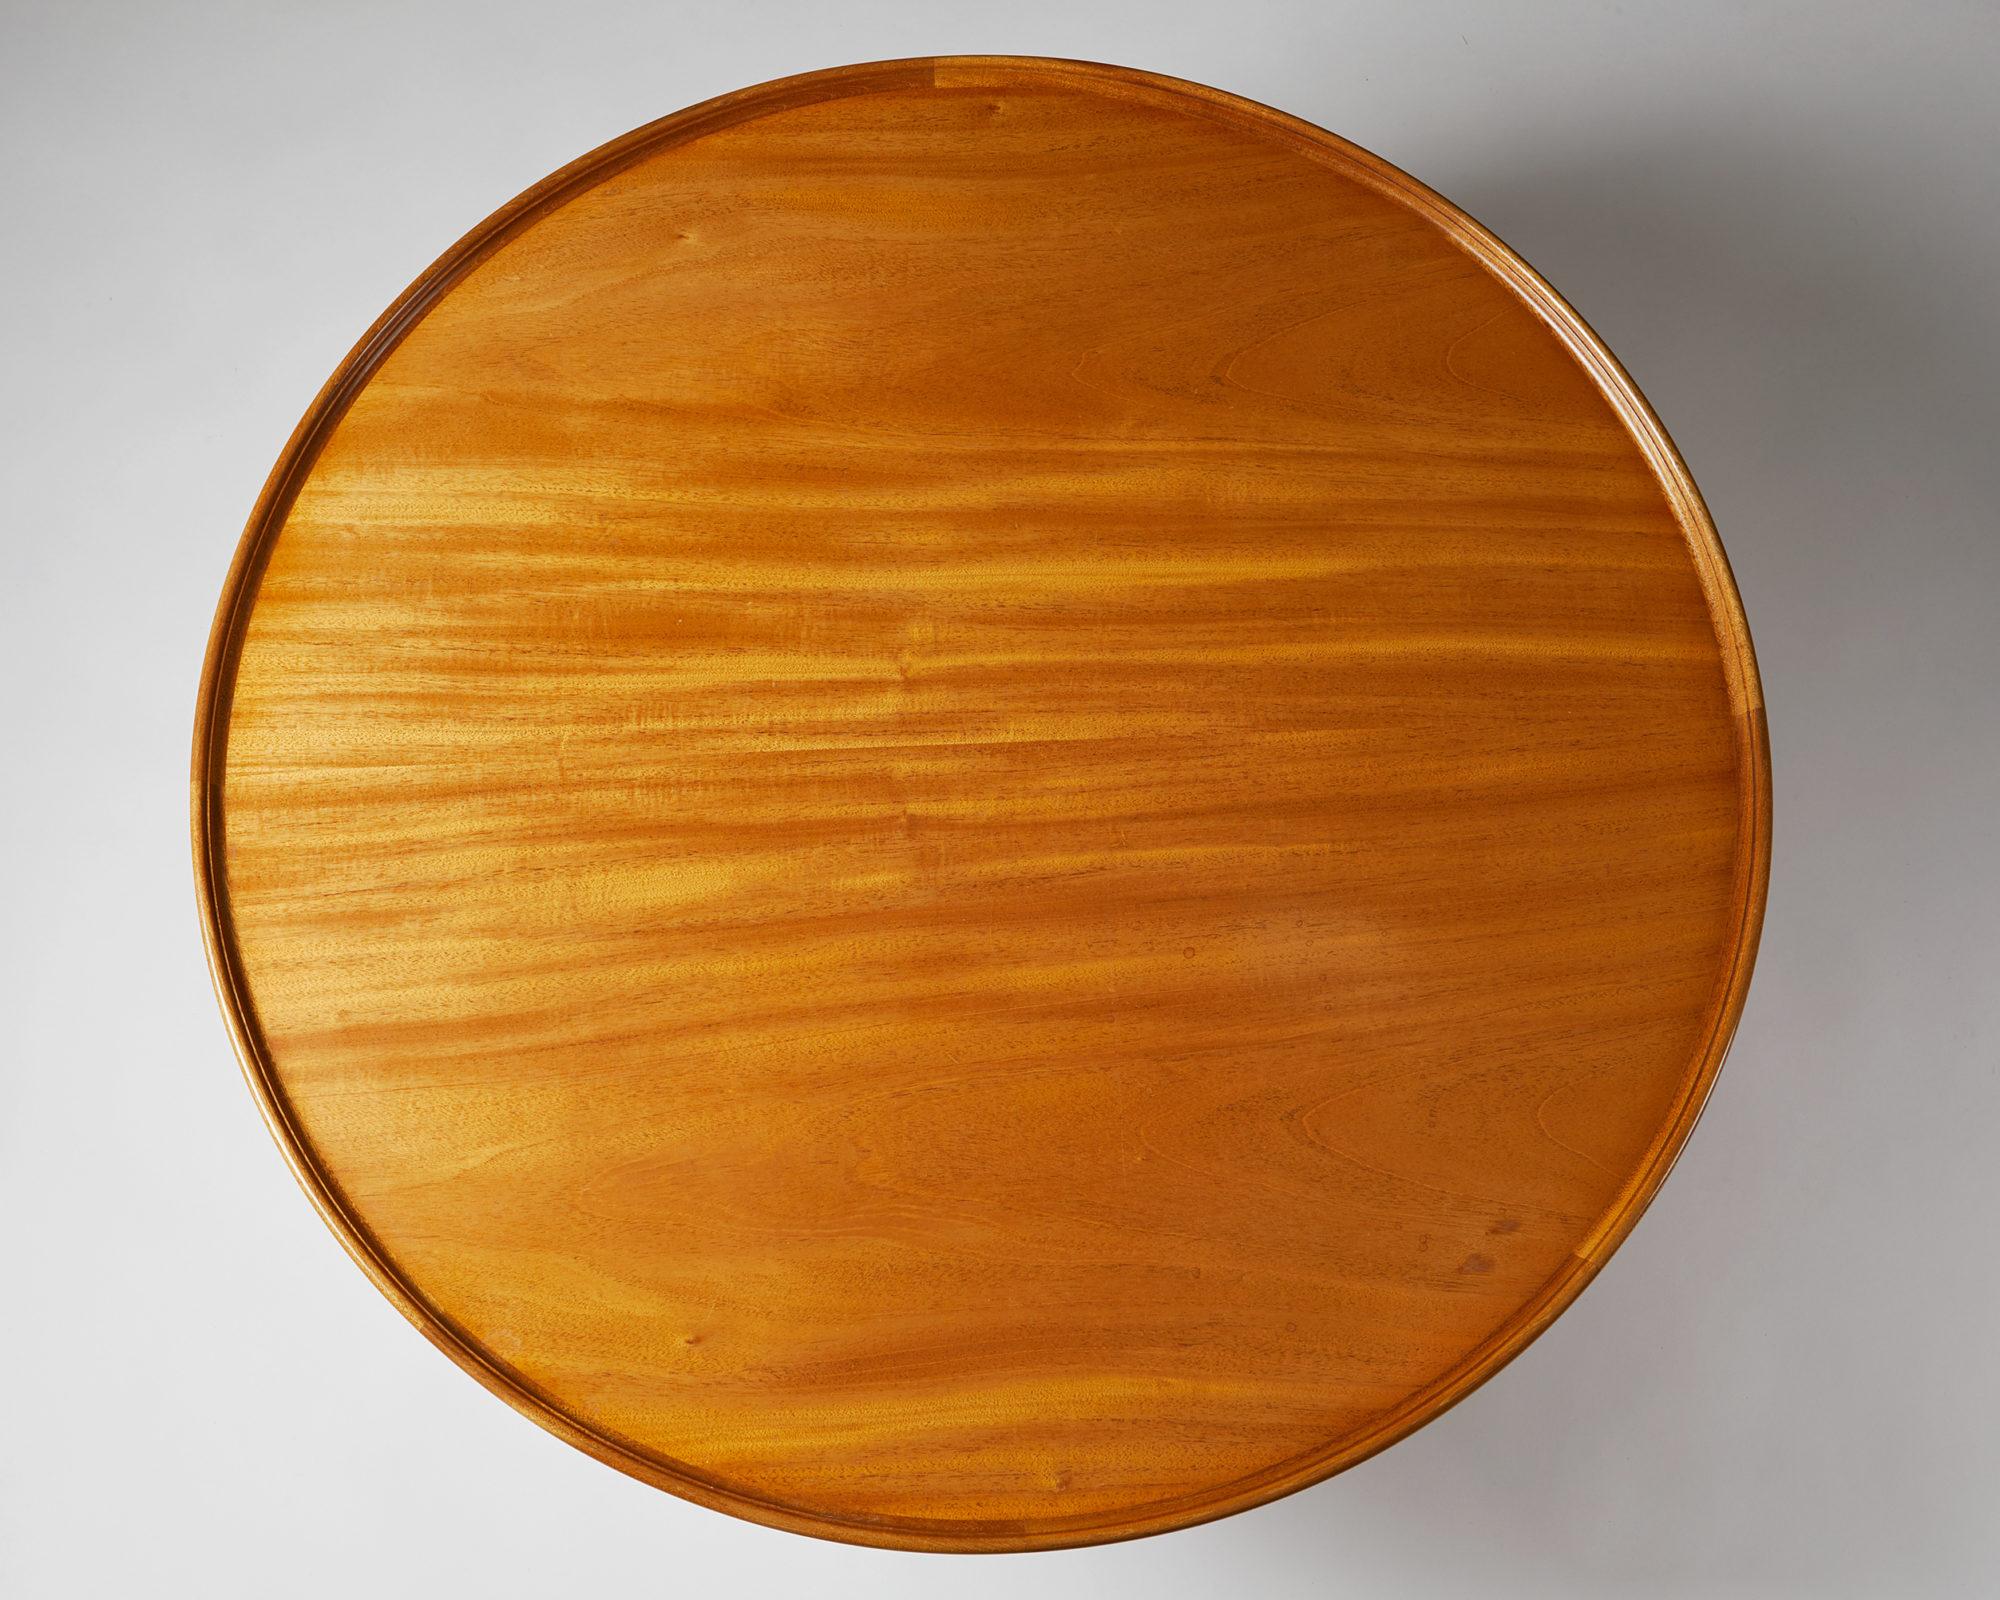 Scandinavian Modern Occasional Table “Egyptian Table” Designed by Mogens Lassen, Denmark, 1940s